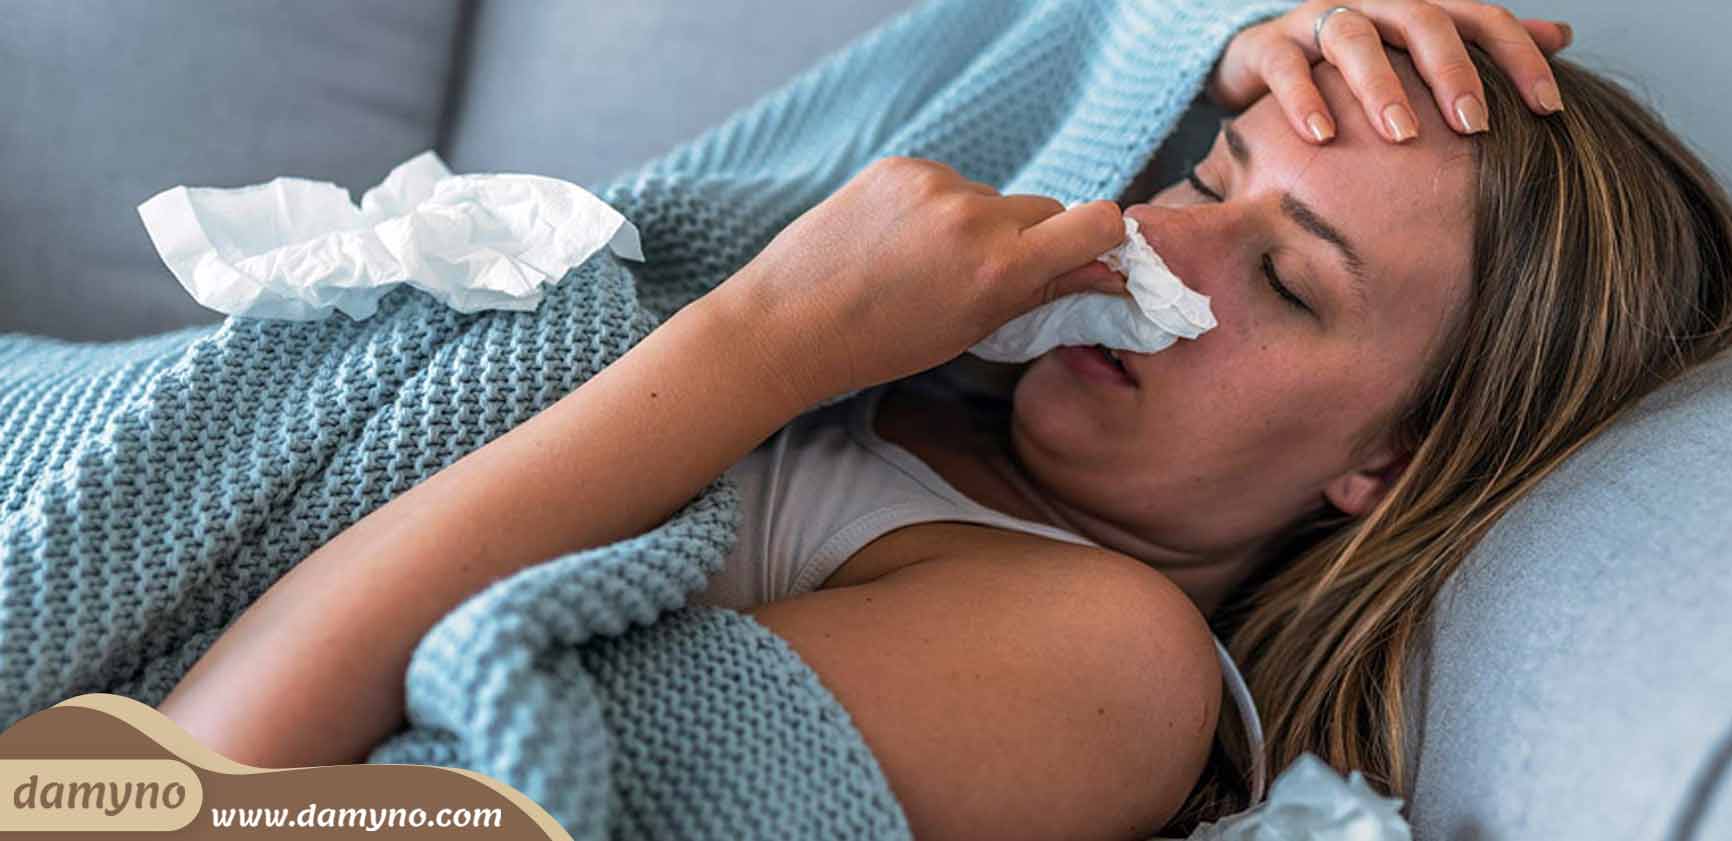 دمنوش های رفع سرماخوردگی و آنفولانزا